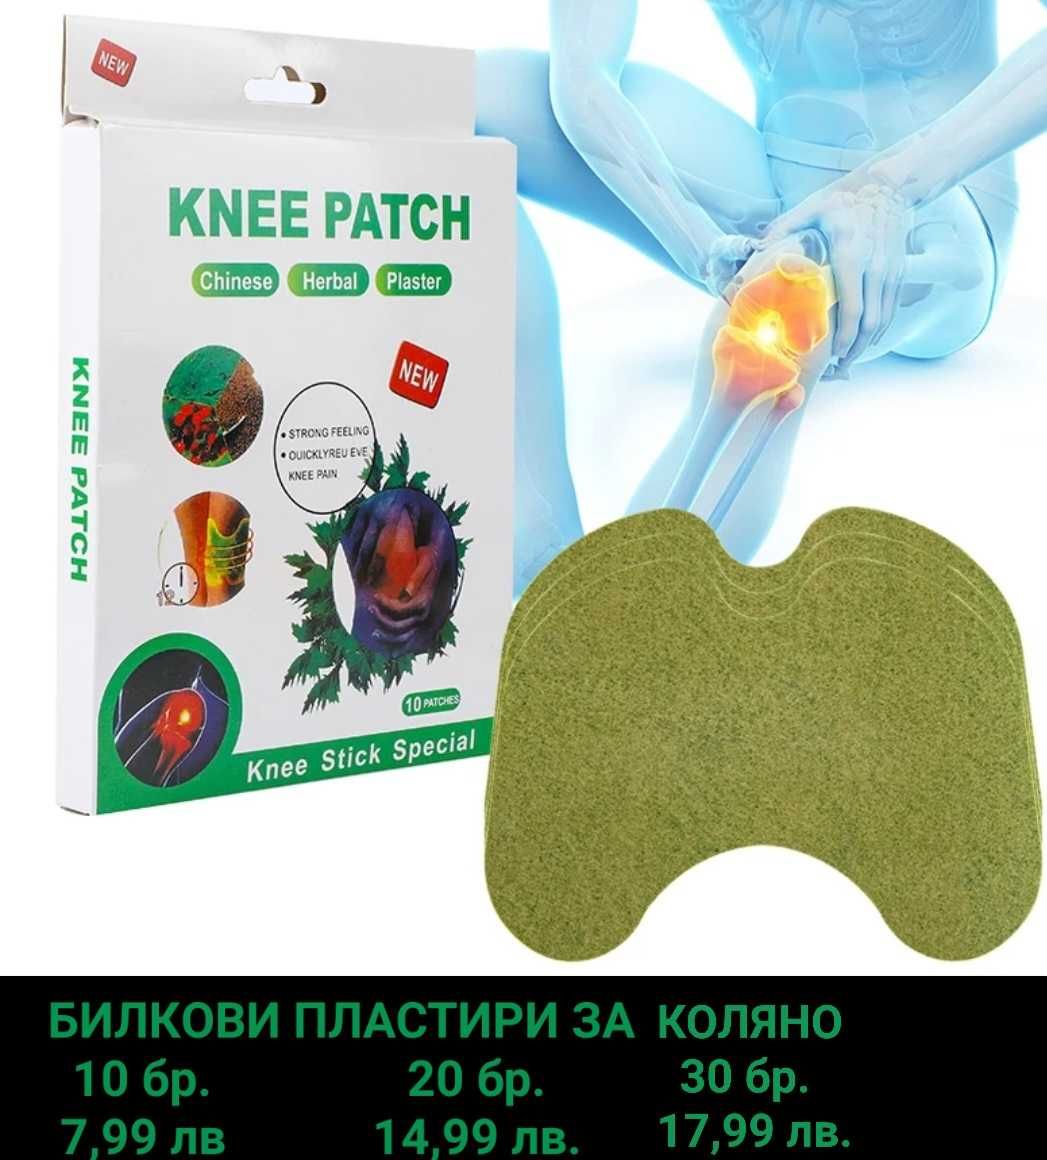 Загряващ пластир за коляно KNEE PATCH